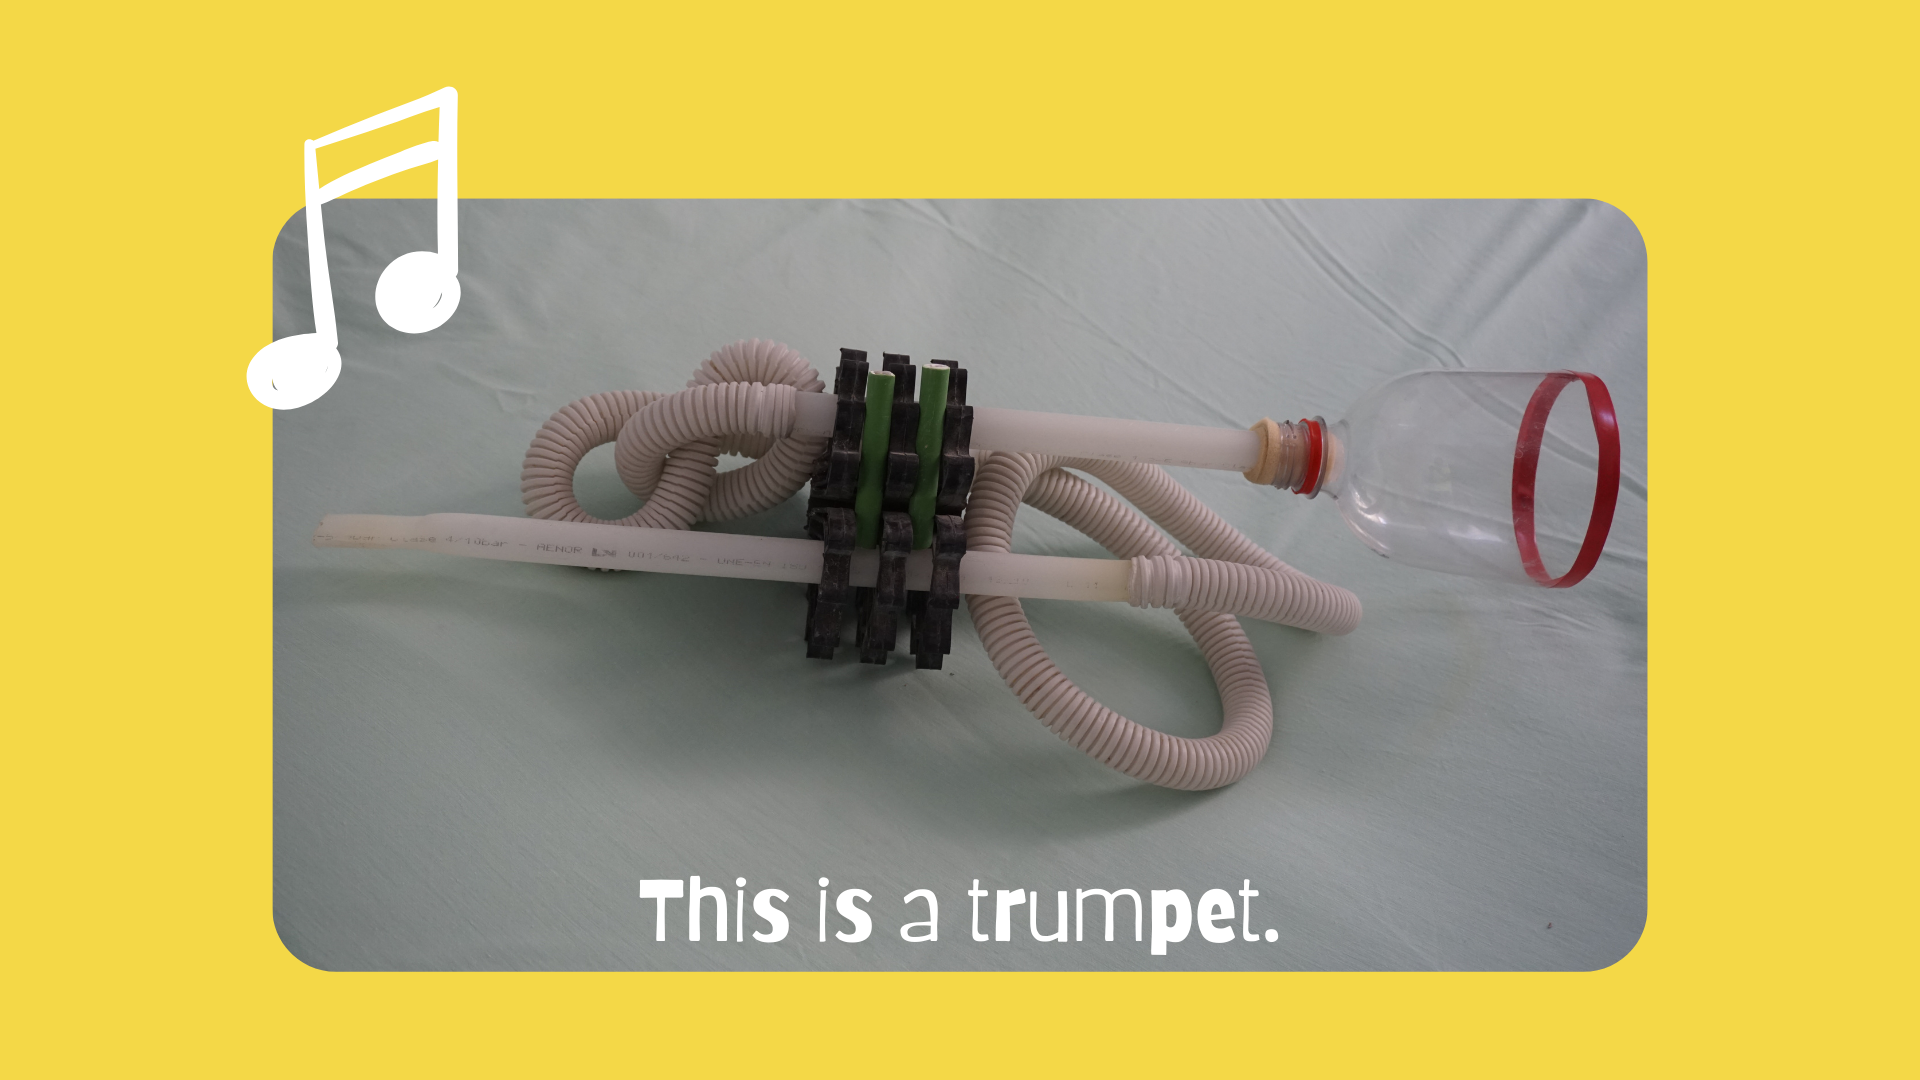 En la imagen puedes ver una trompeta hecha con tubos coarrugados y lisos, botella de plástico reciclada